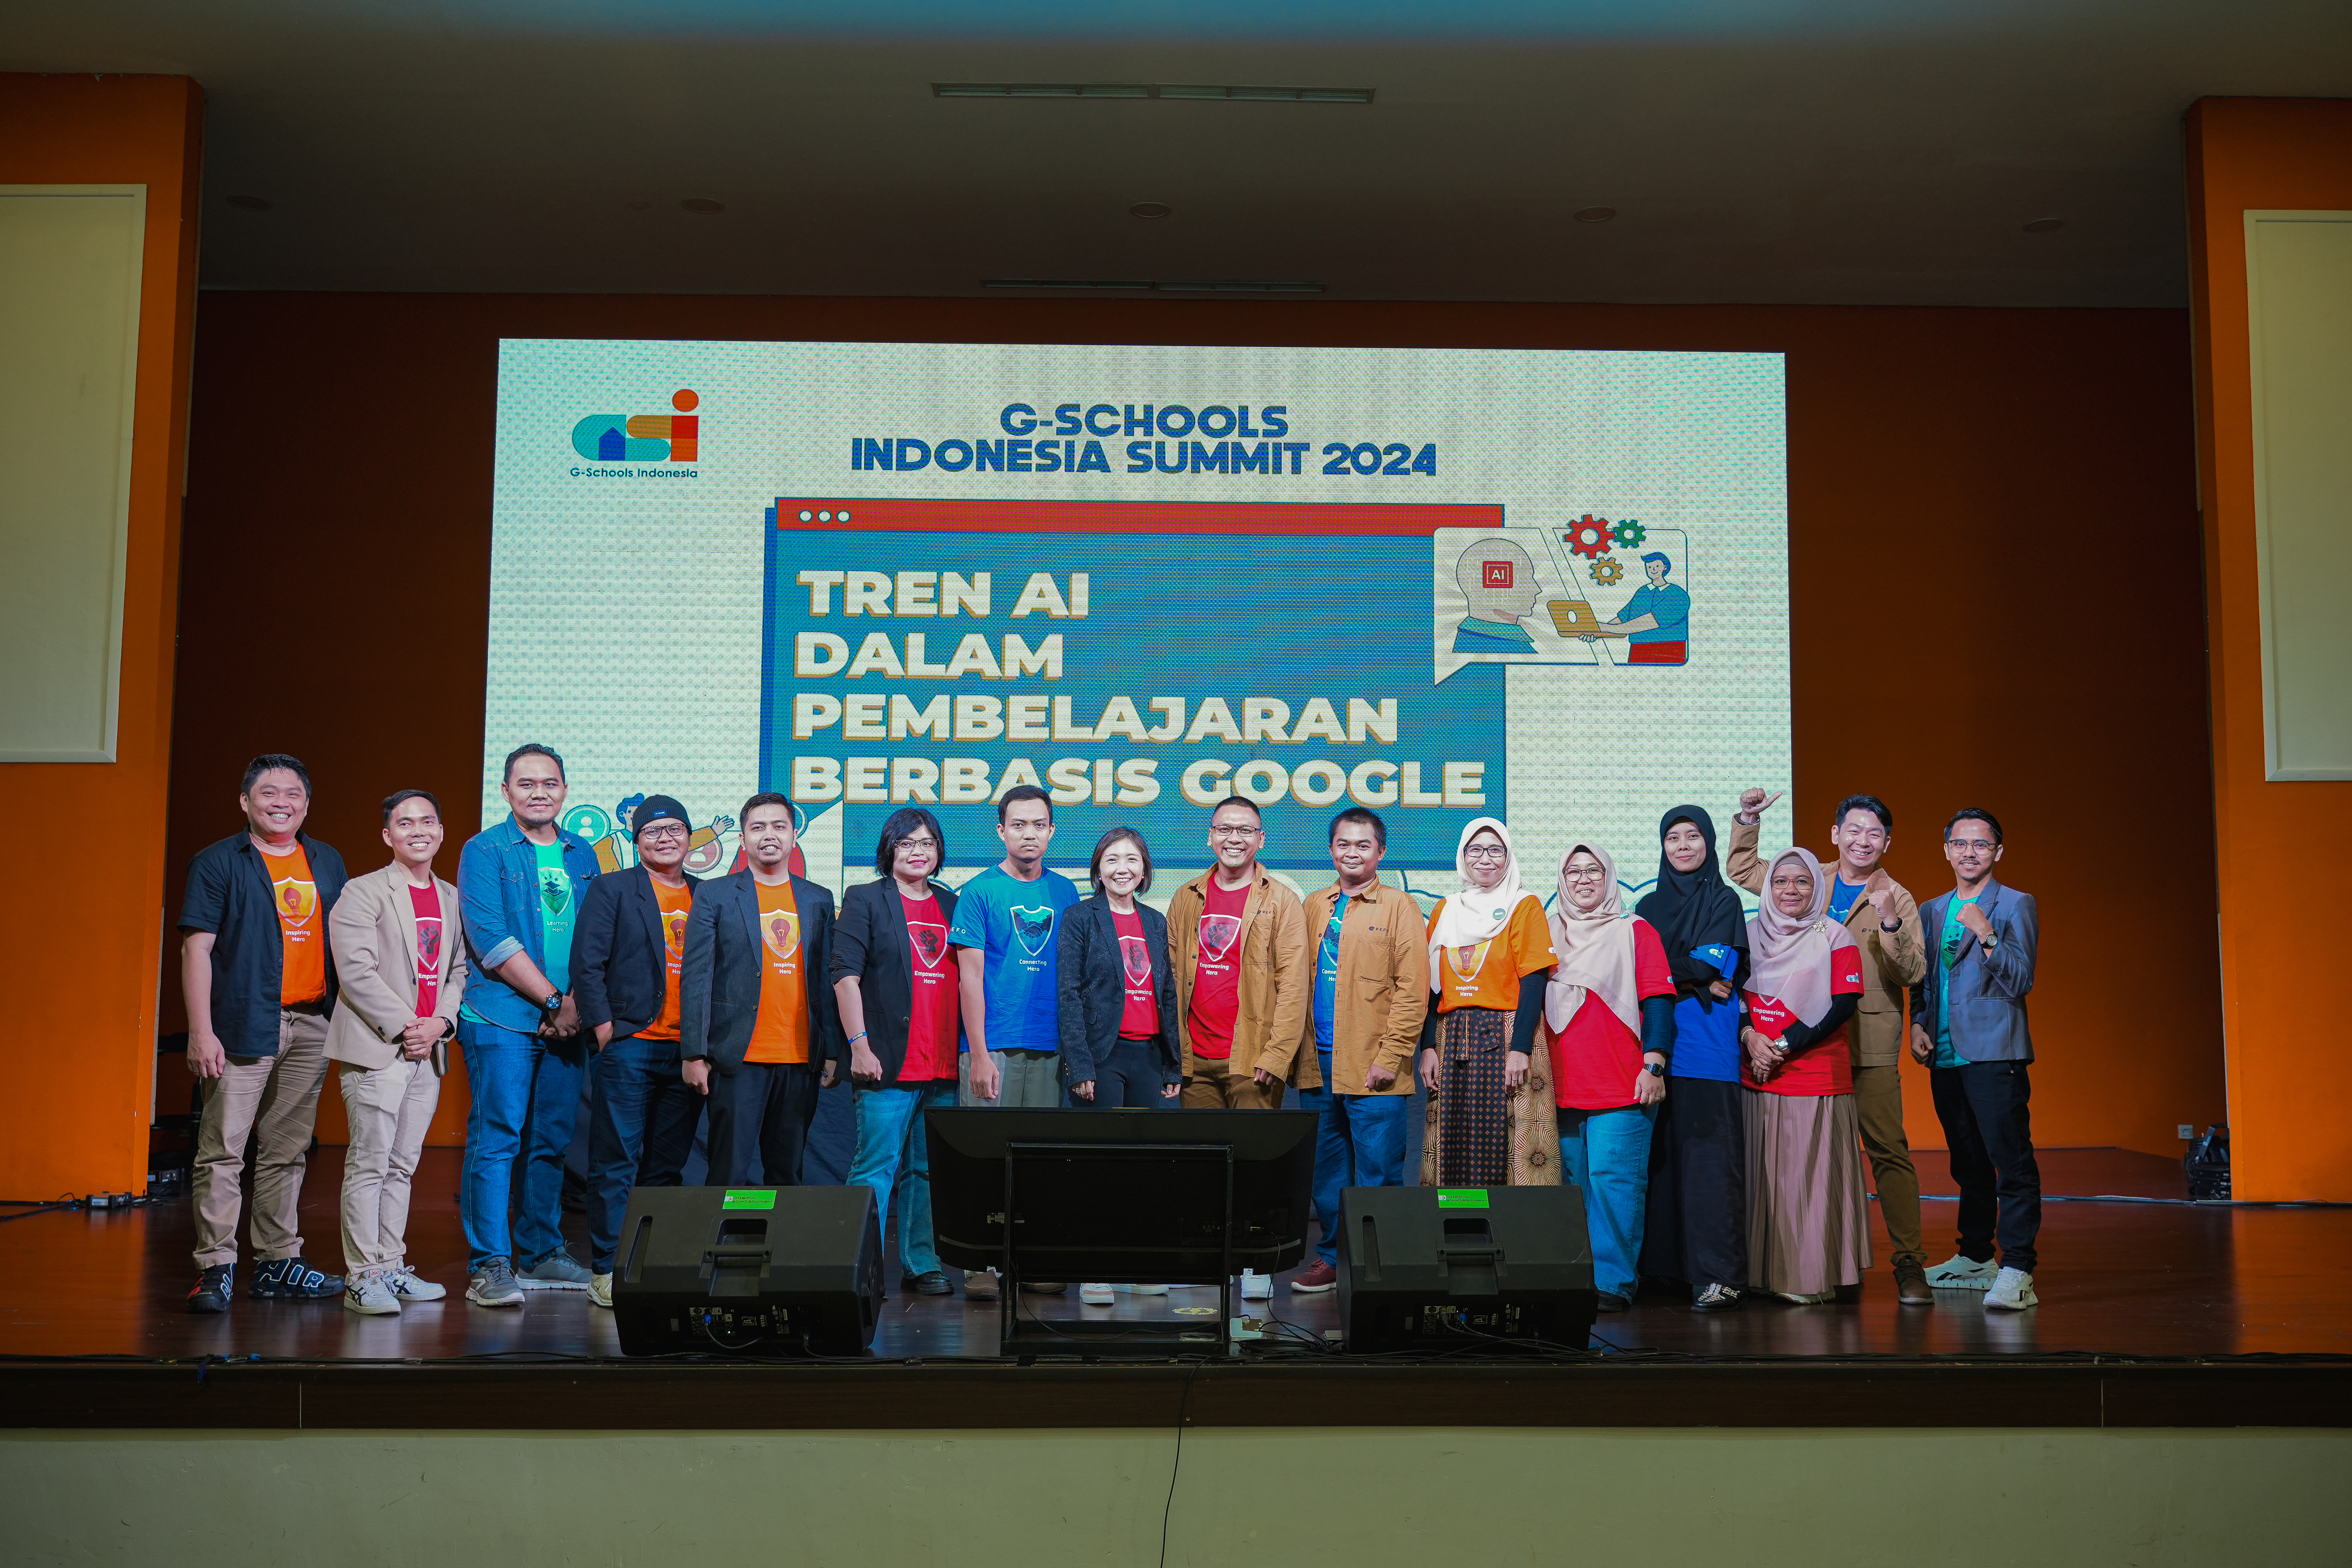 REFO Sukses Selenggarakan G-Schools Indonesia Summit (GSIS) 2024 dengan Tema “Tren AI dalam Pembelajaran Berbasis Google”